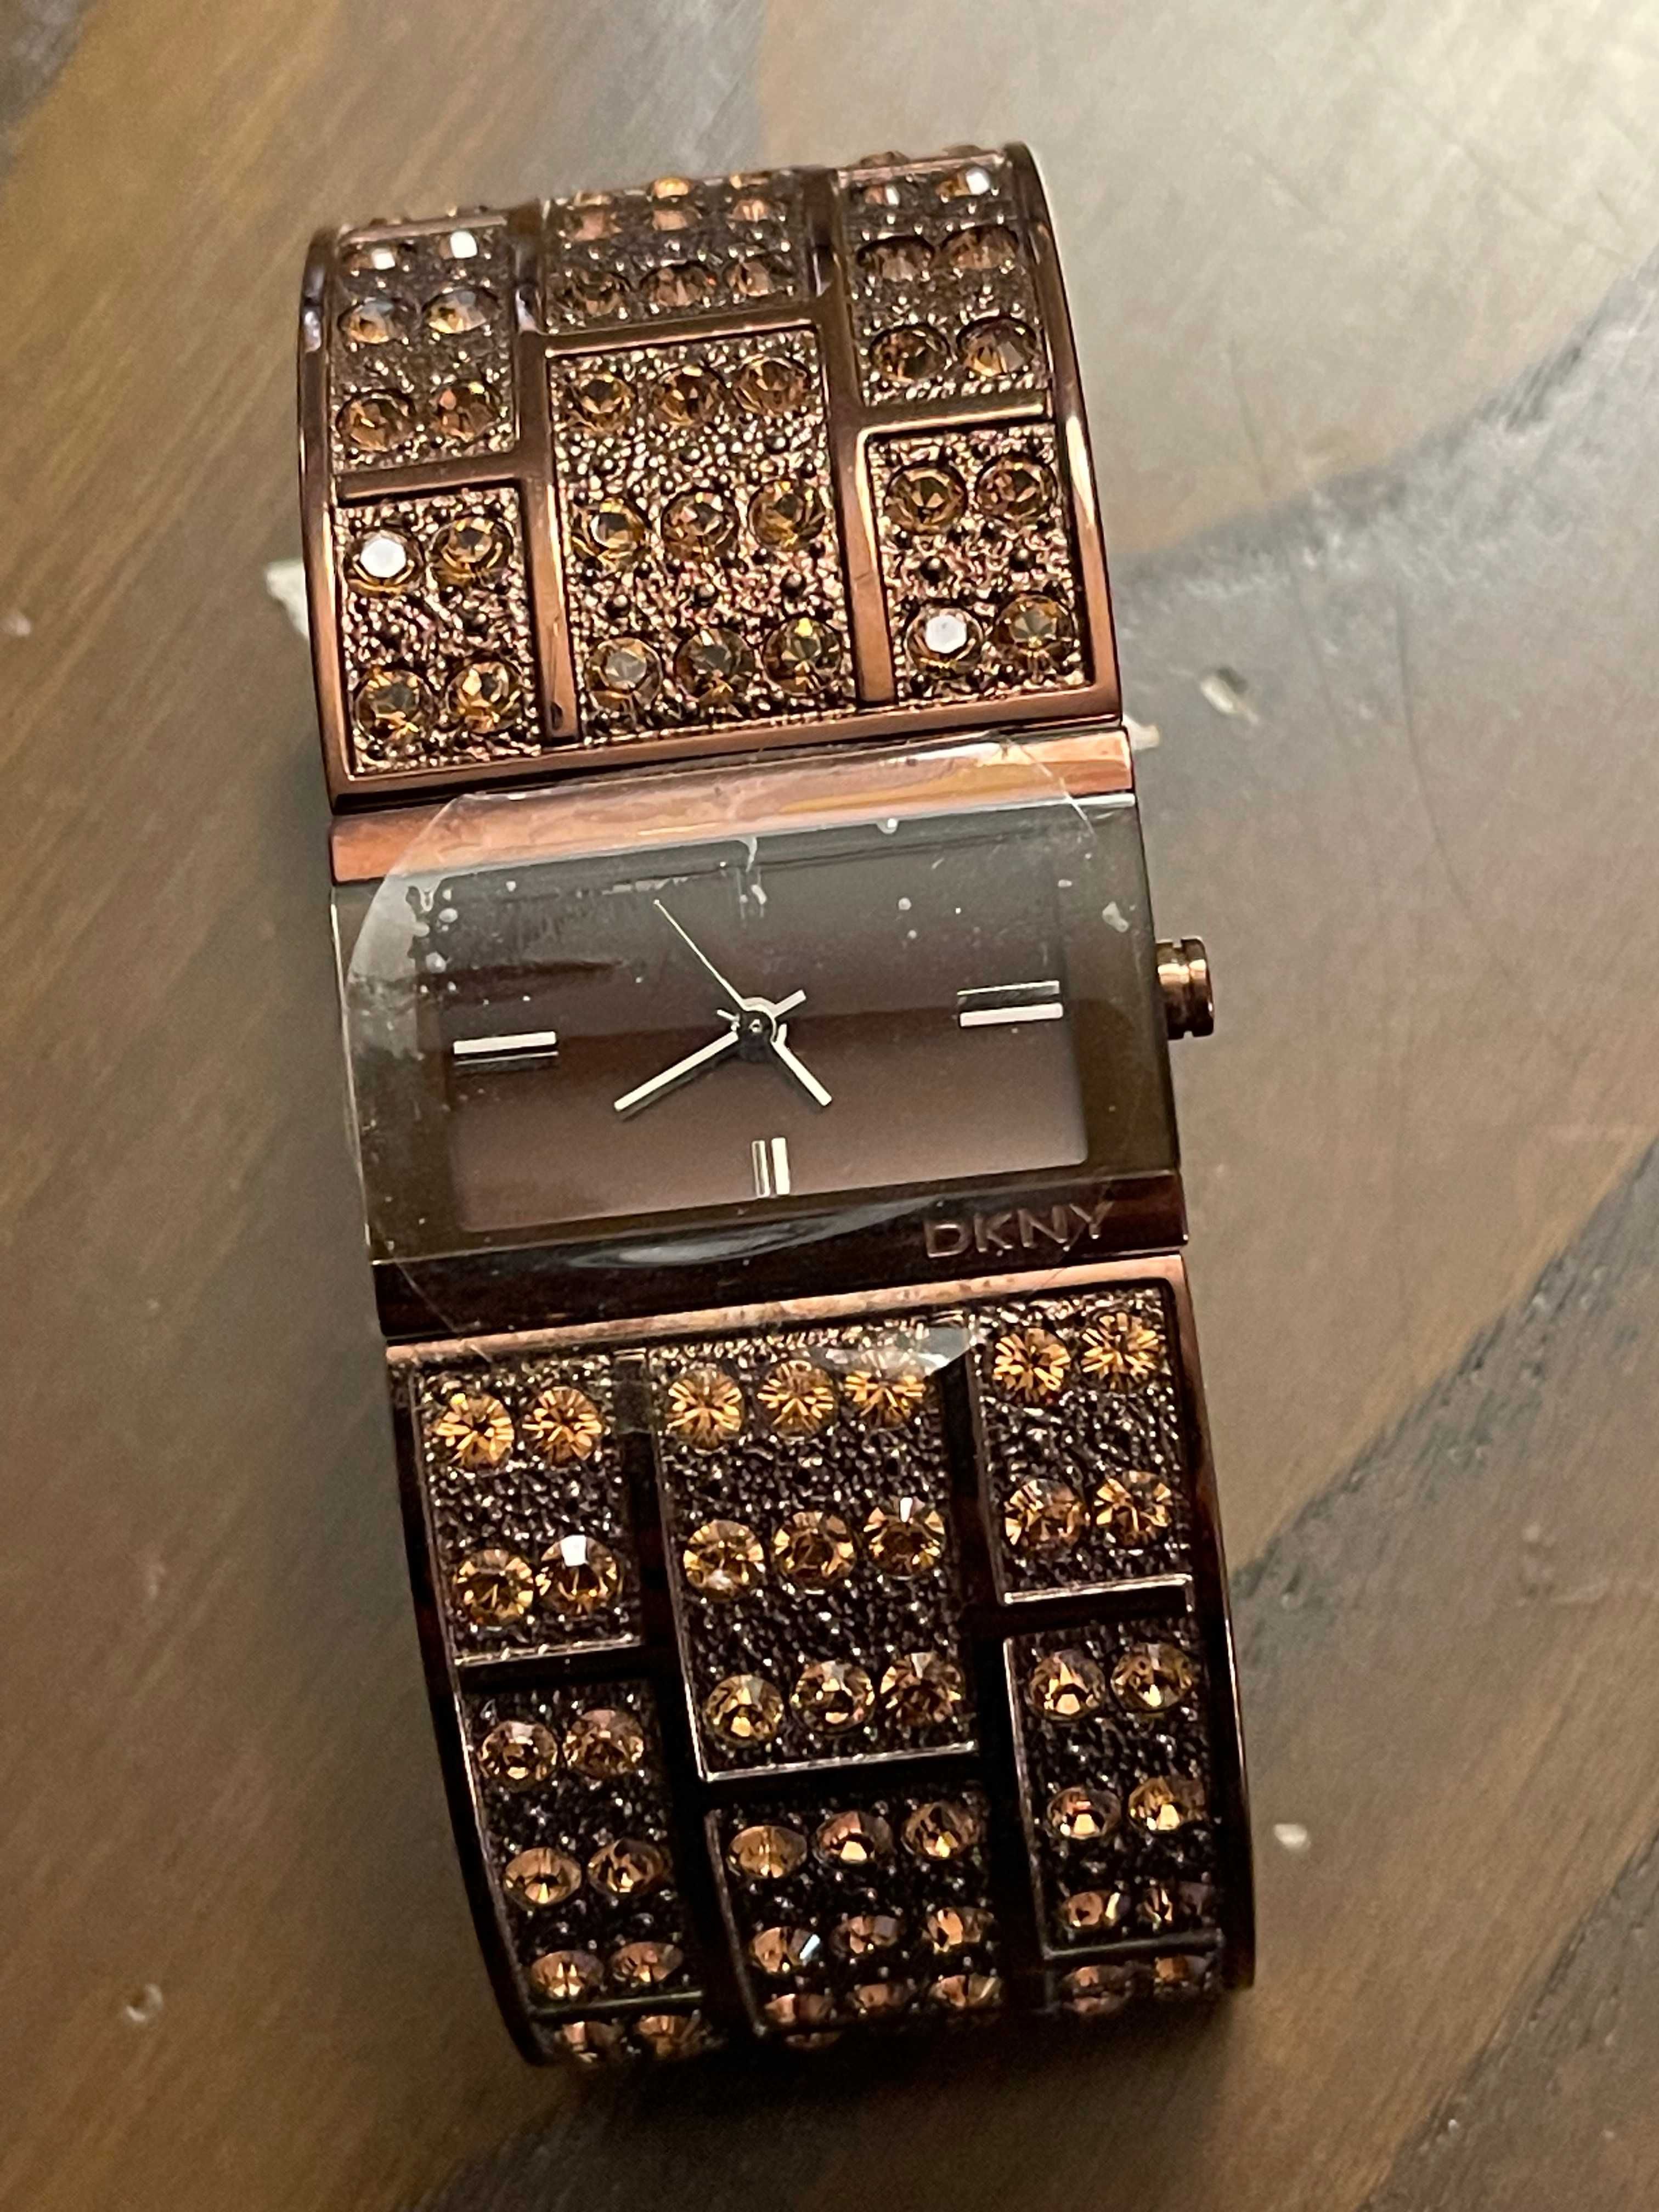 Relógio DKNY 3895 bracelete com cristais - NOVO